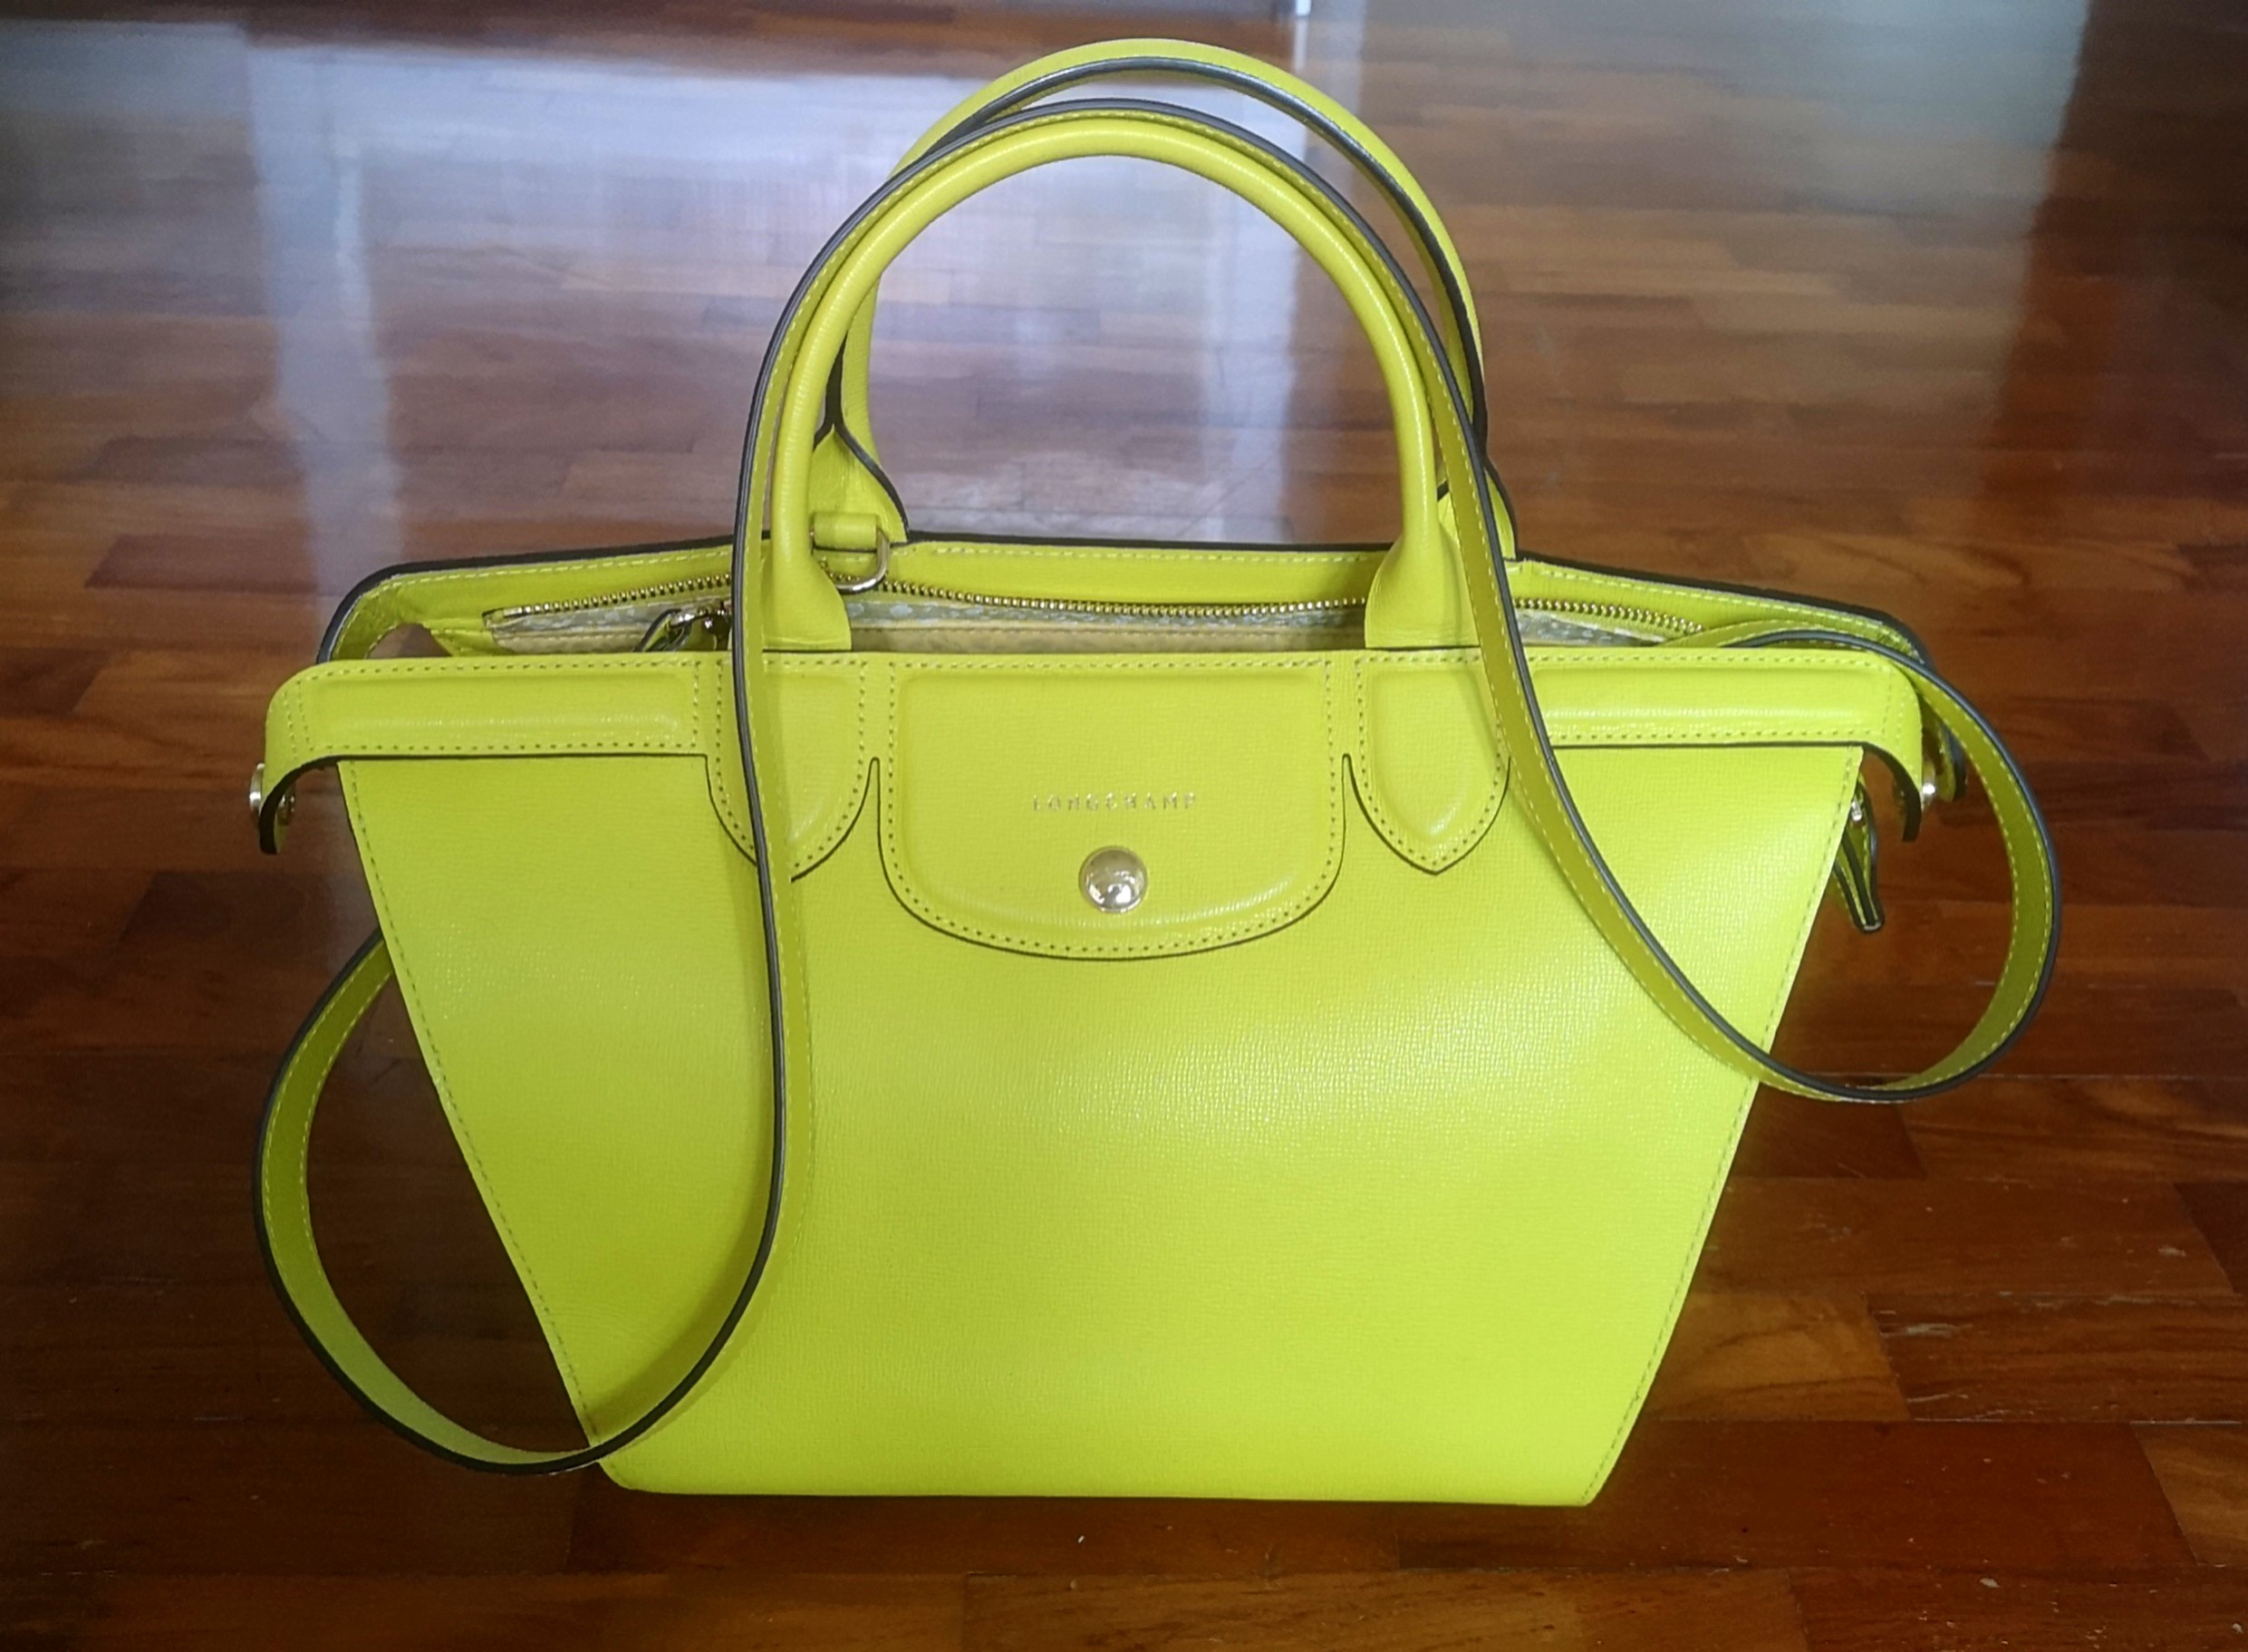 longchamp yellow leather bag